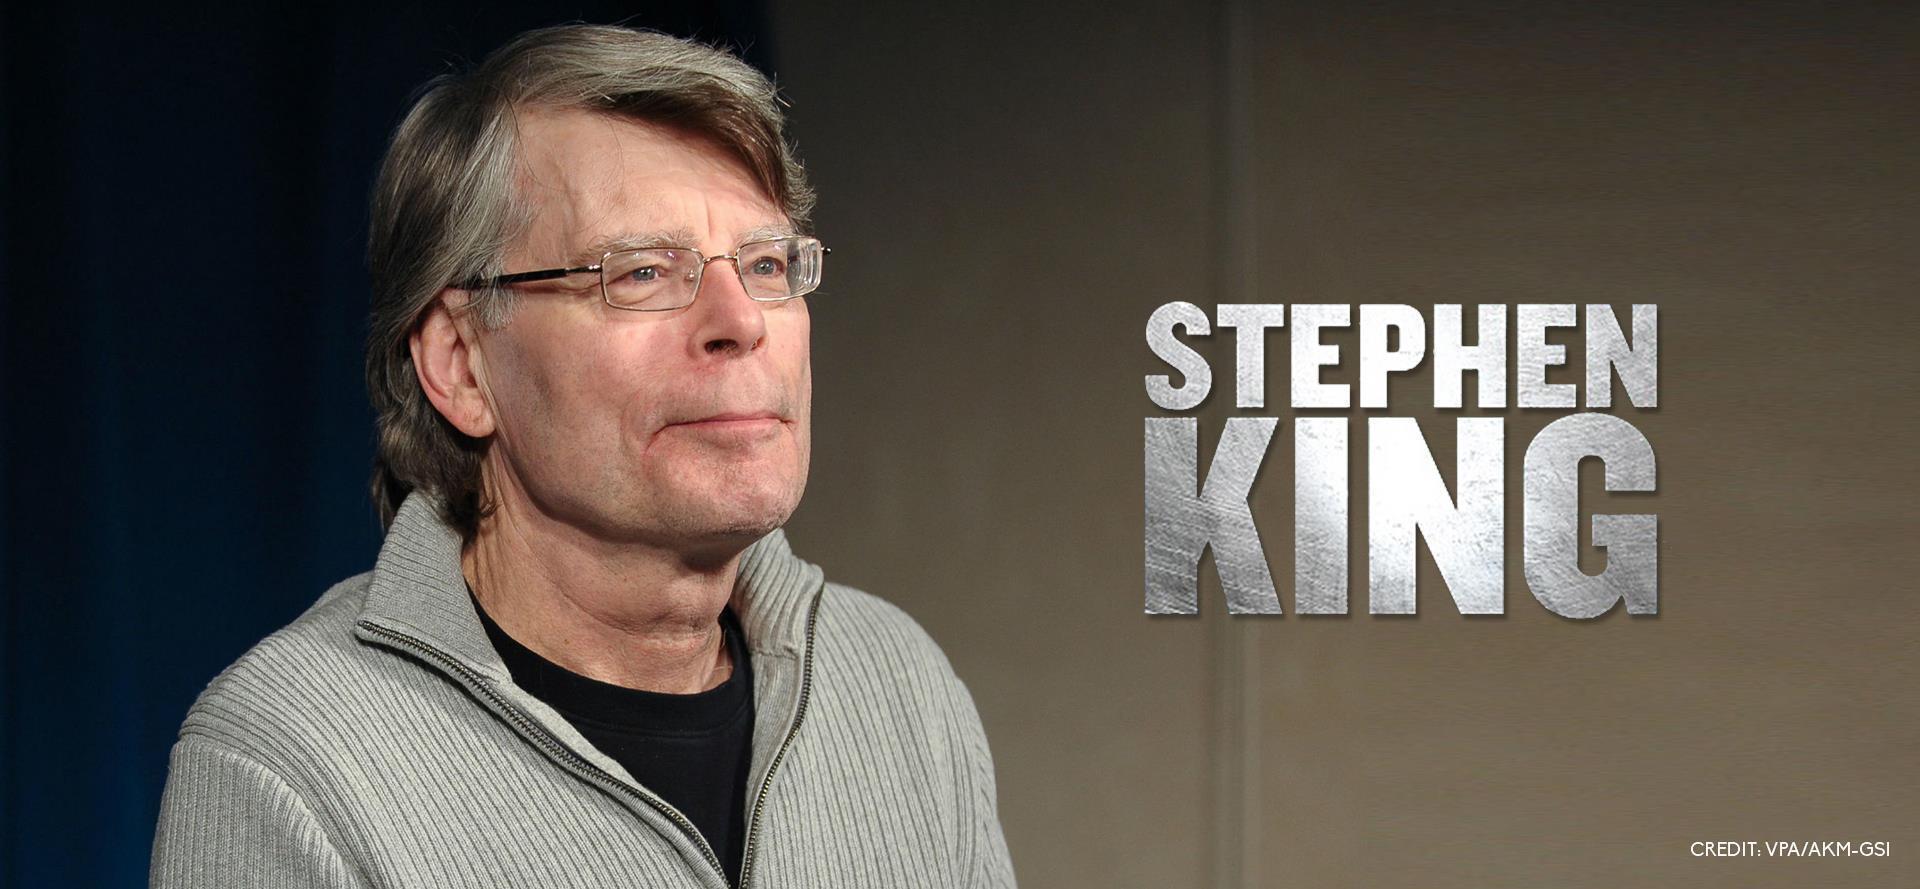 Stephen King gyermekíróknak segít kiadni egy könyvet, melyet a járványhelyzet inspirált